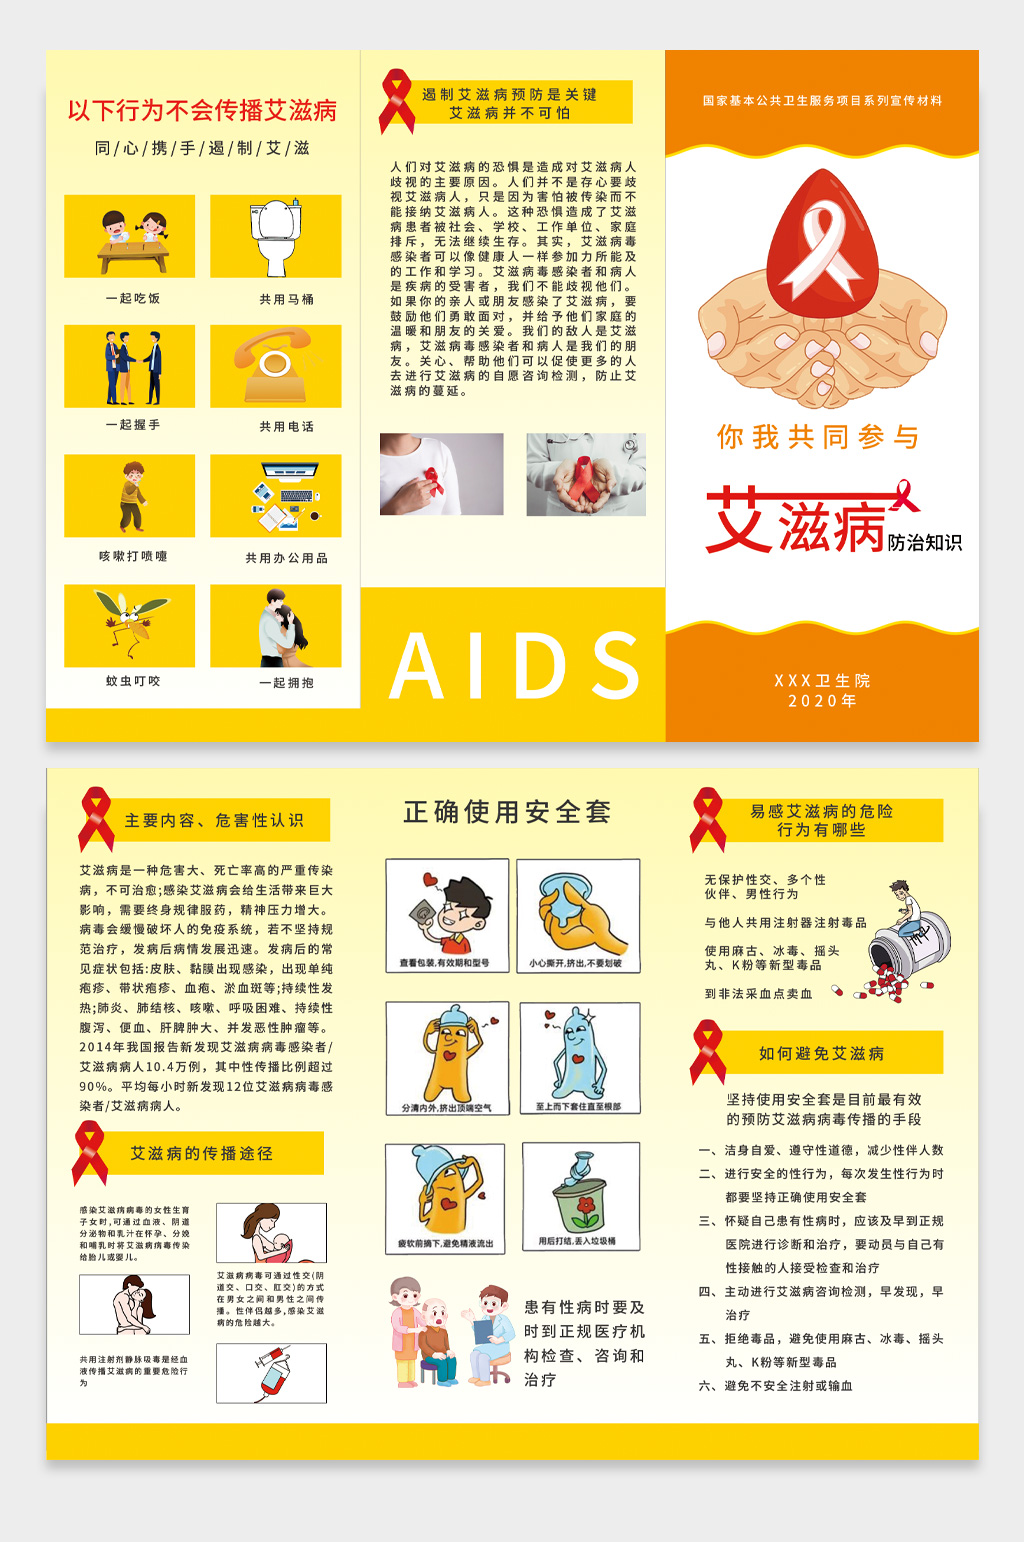 艾滋病内容知识图片